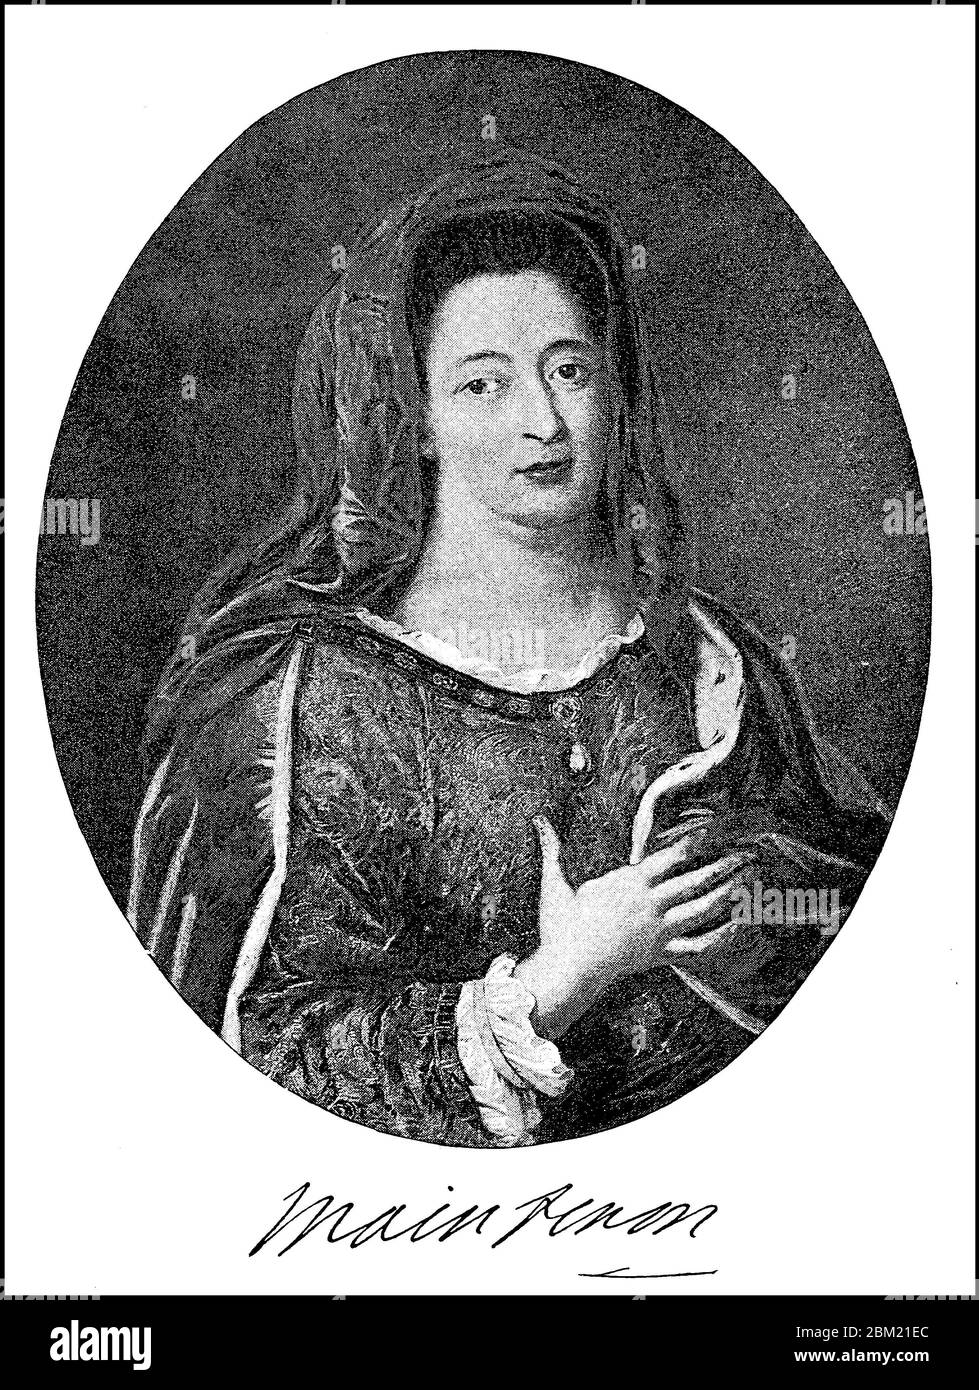 Françoise d'Aubigné, married Madame Scarron, from 1688 Marquise de Maintenon, called Madame de Maintenon, 27 November 1635 - 15 April 1719 applies, the last mistress of Louis XIV of France, and was probably from 1683, in an always. secret morganatic marriage his second wife  /  Françoise d’Aubigné, verheiratete Madame Scarron, ab 1688 Marquise de Maintenon, genannt Madame de Maintenon, 27. November 1635 - 15. April 1719, gilt als letzte Mätresse Ludwigs XIV. von Frankreich, und war, wohl ab 1683, in einer stets geheim gehaltenen morganatischen Ehe seine zweite Gemahlin, Historisch, historical, Stock Photo